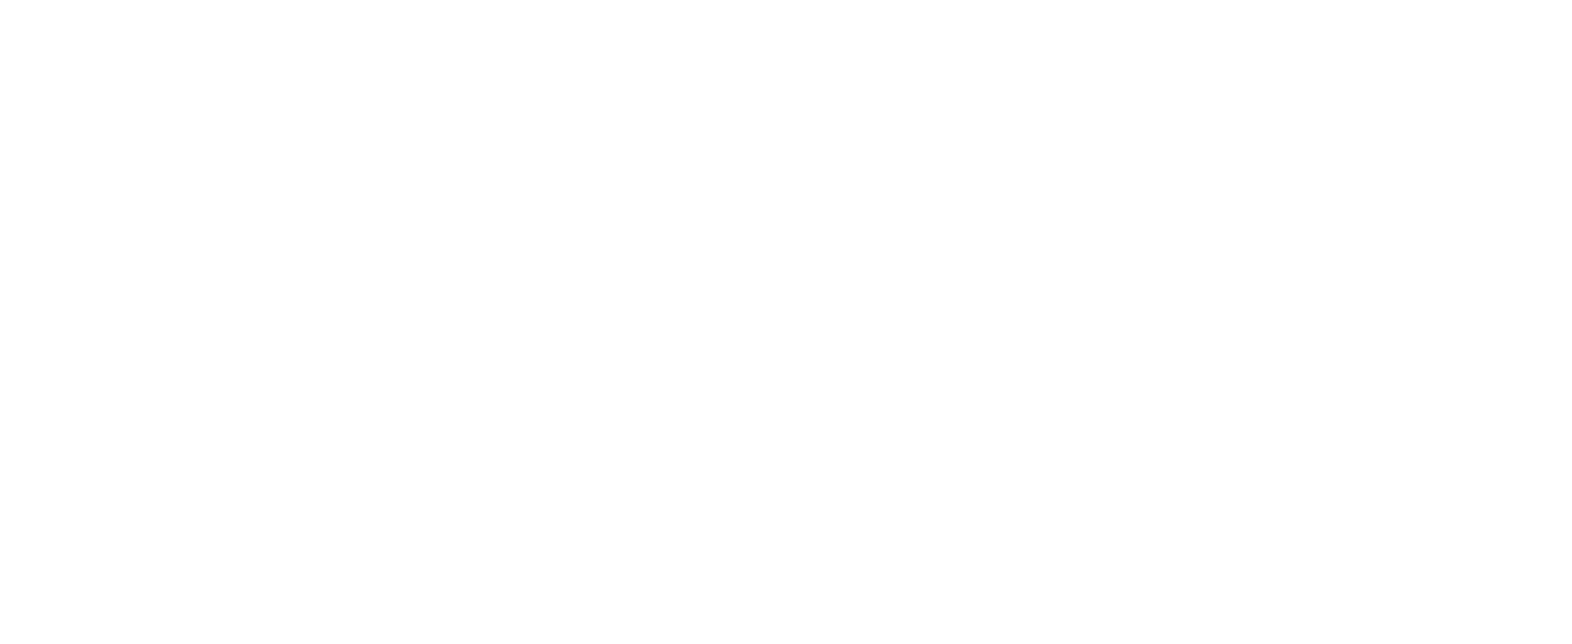 Vmware logo pour fonds sombres (PNG transparent)